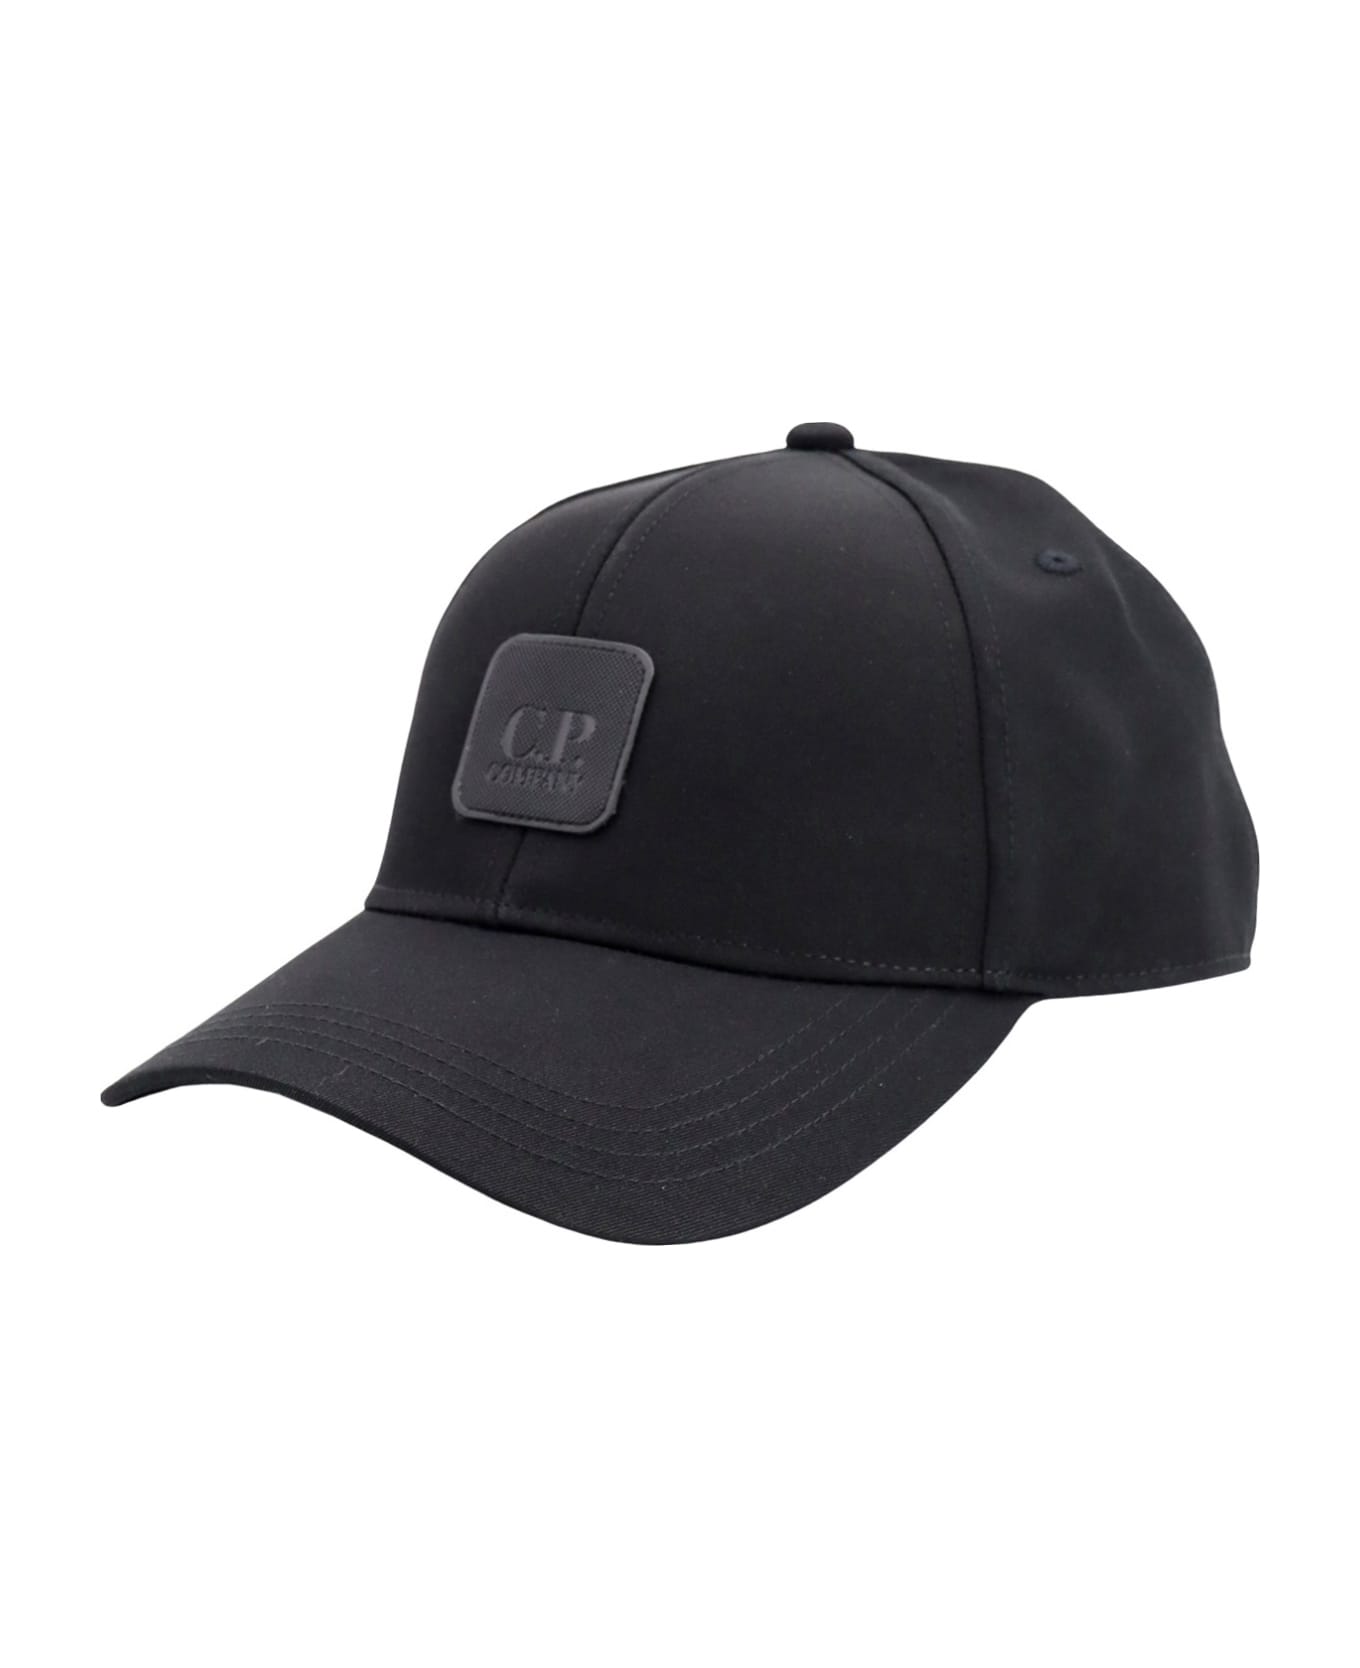 C.P. Company Hat - Nero